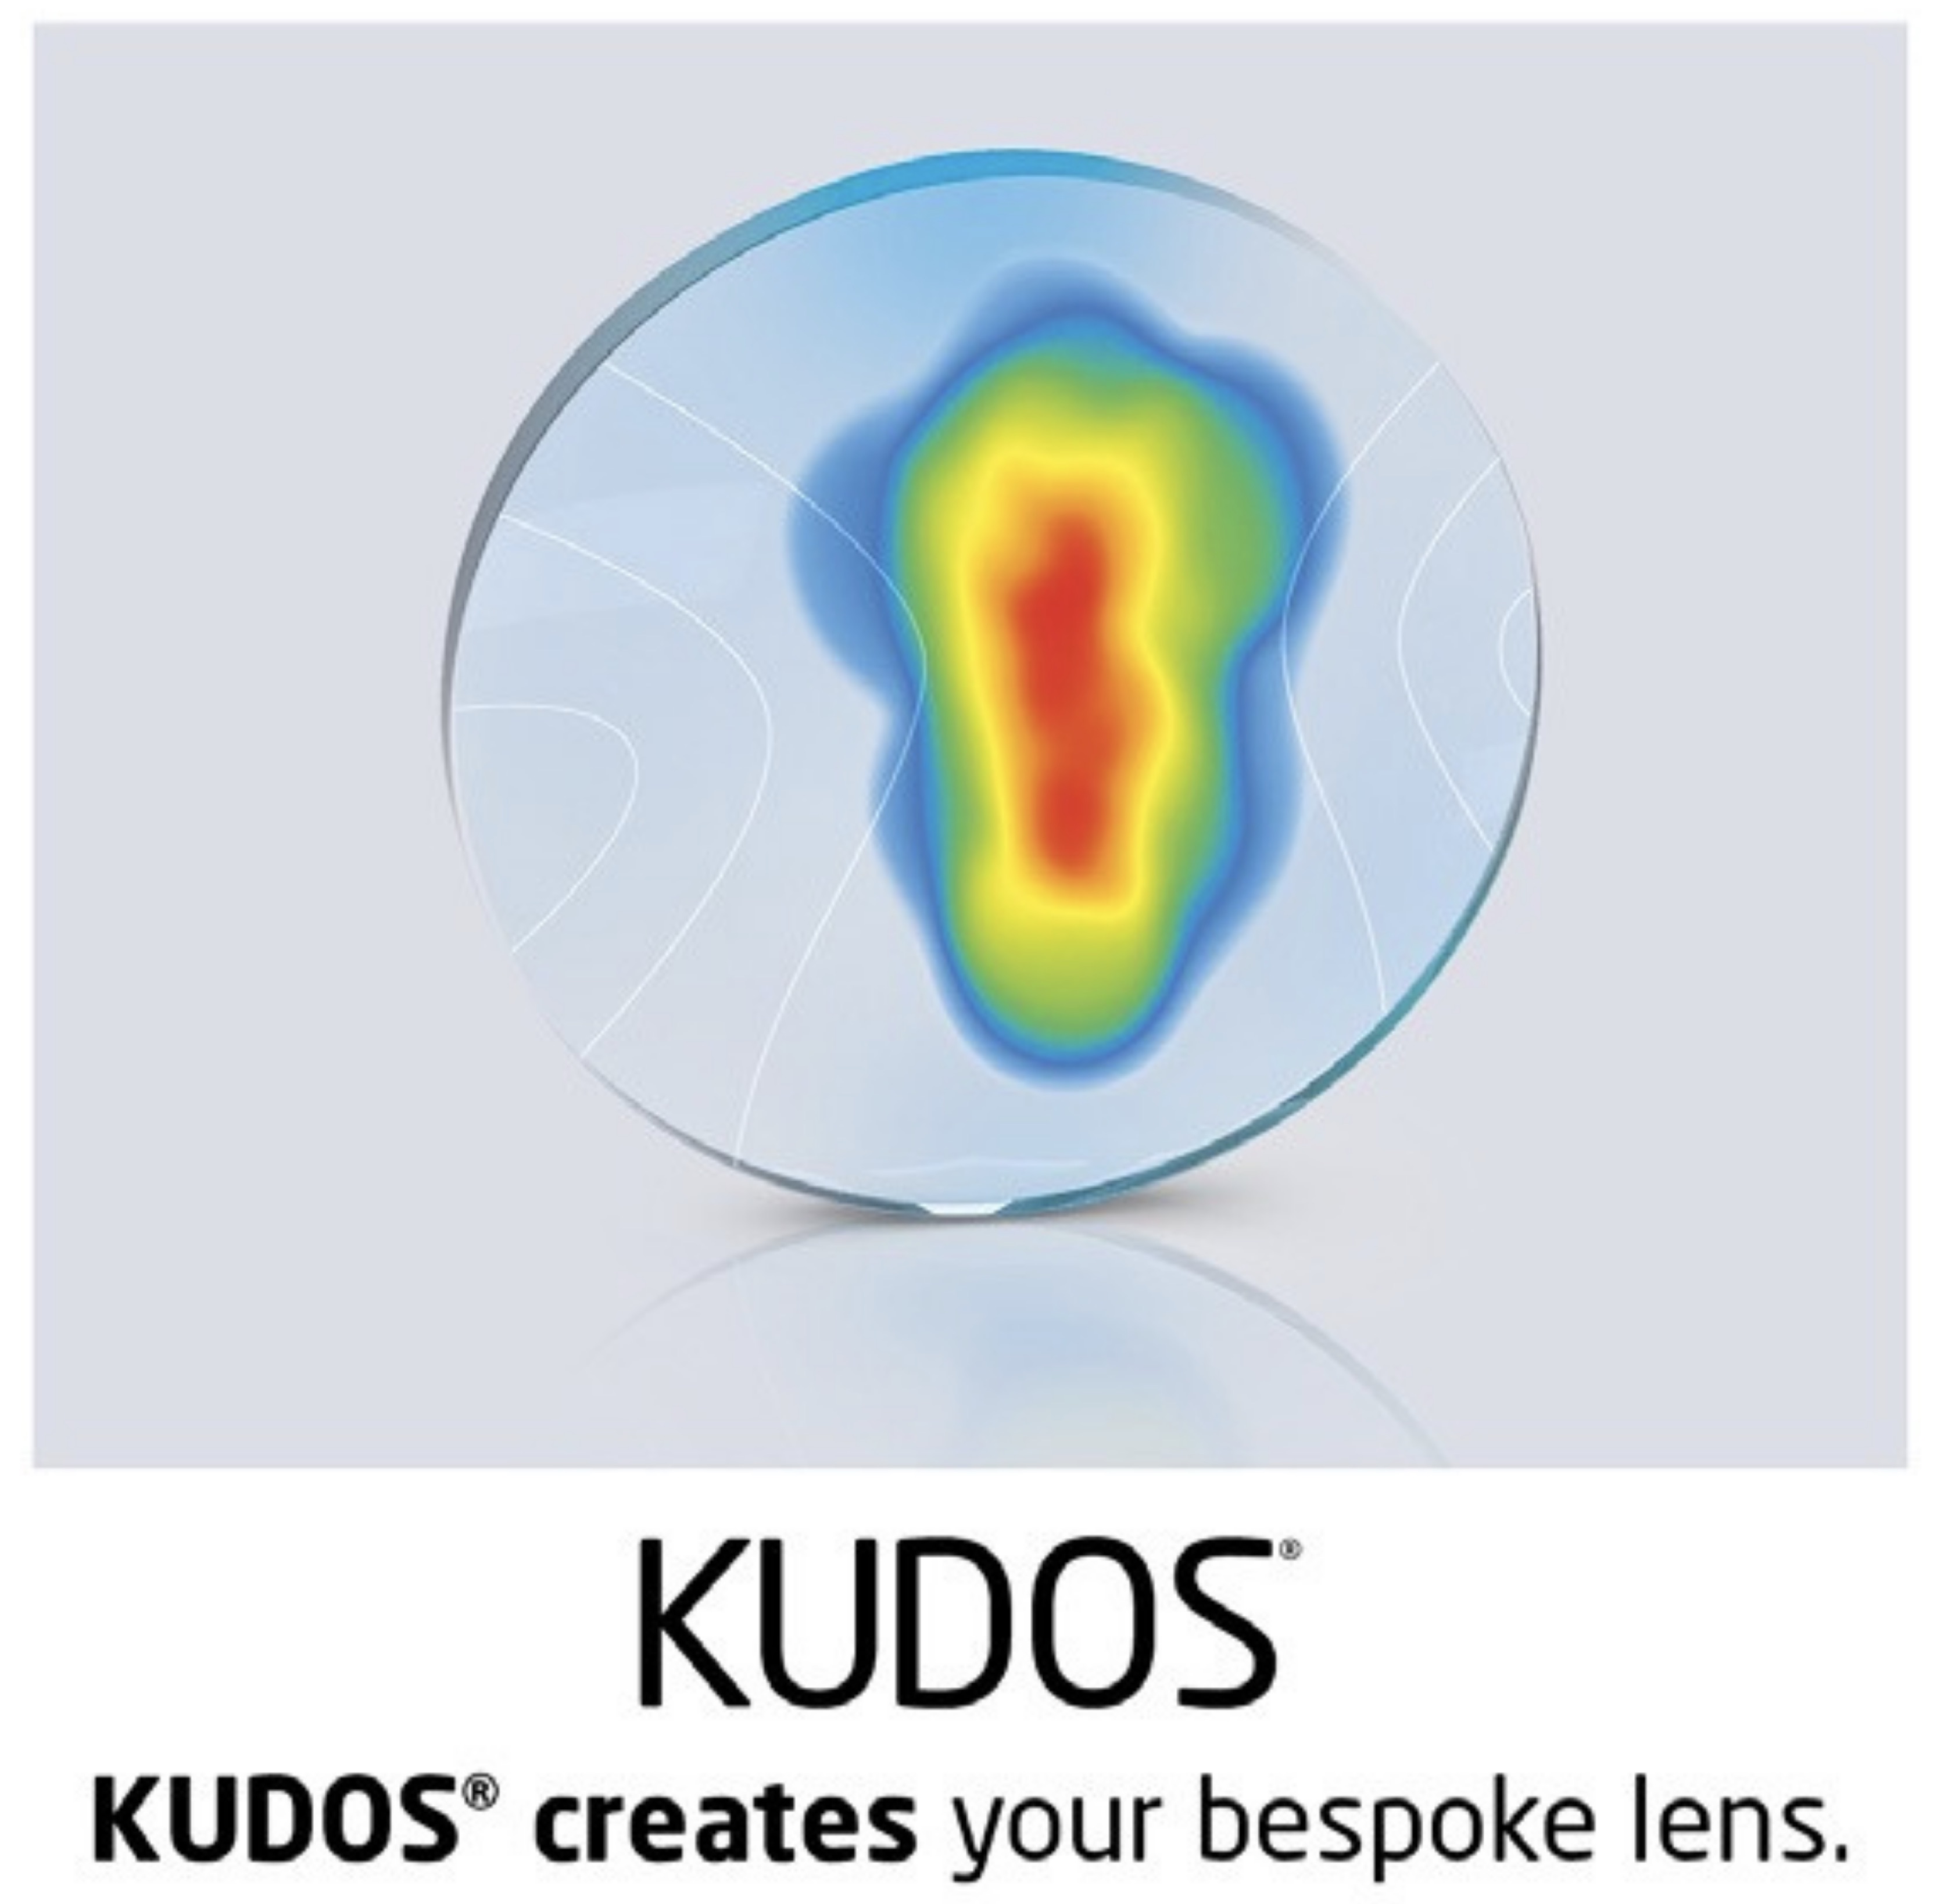 KUDOS creates your bespoke lens